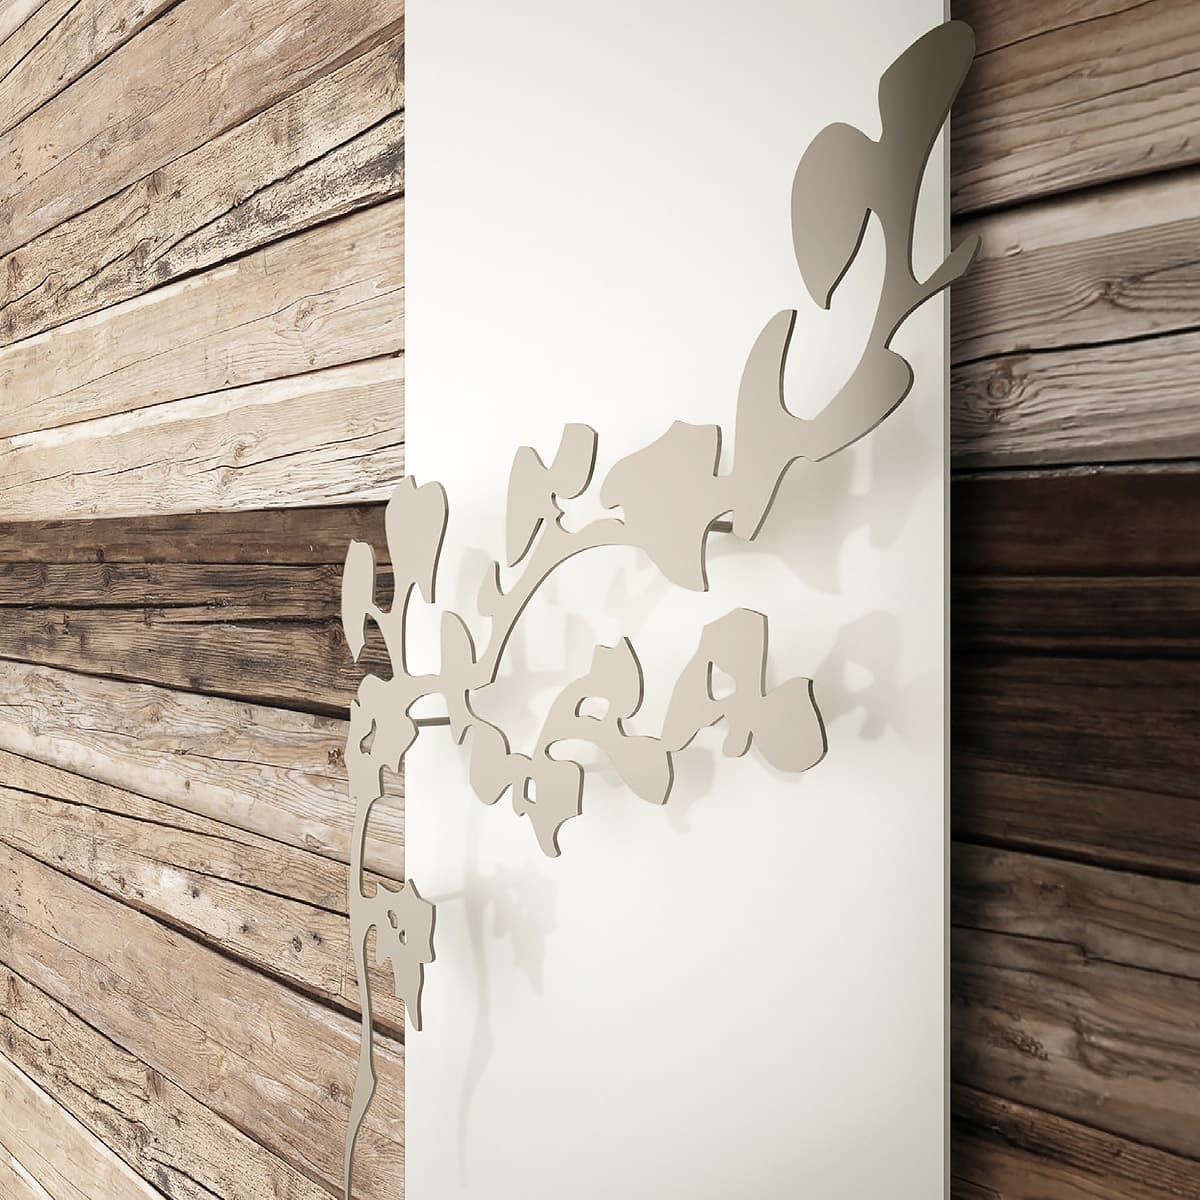 Yang Ribes - Stilvolles K8 Heizpaneel mit dekorativem Handtuchhalter | Radiamo